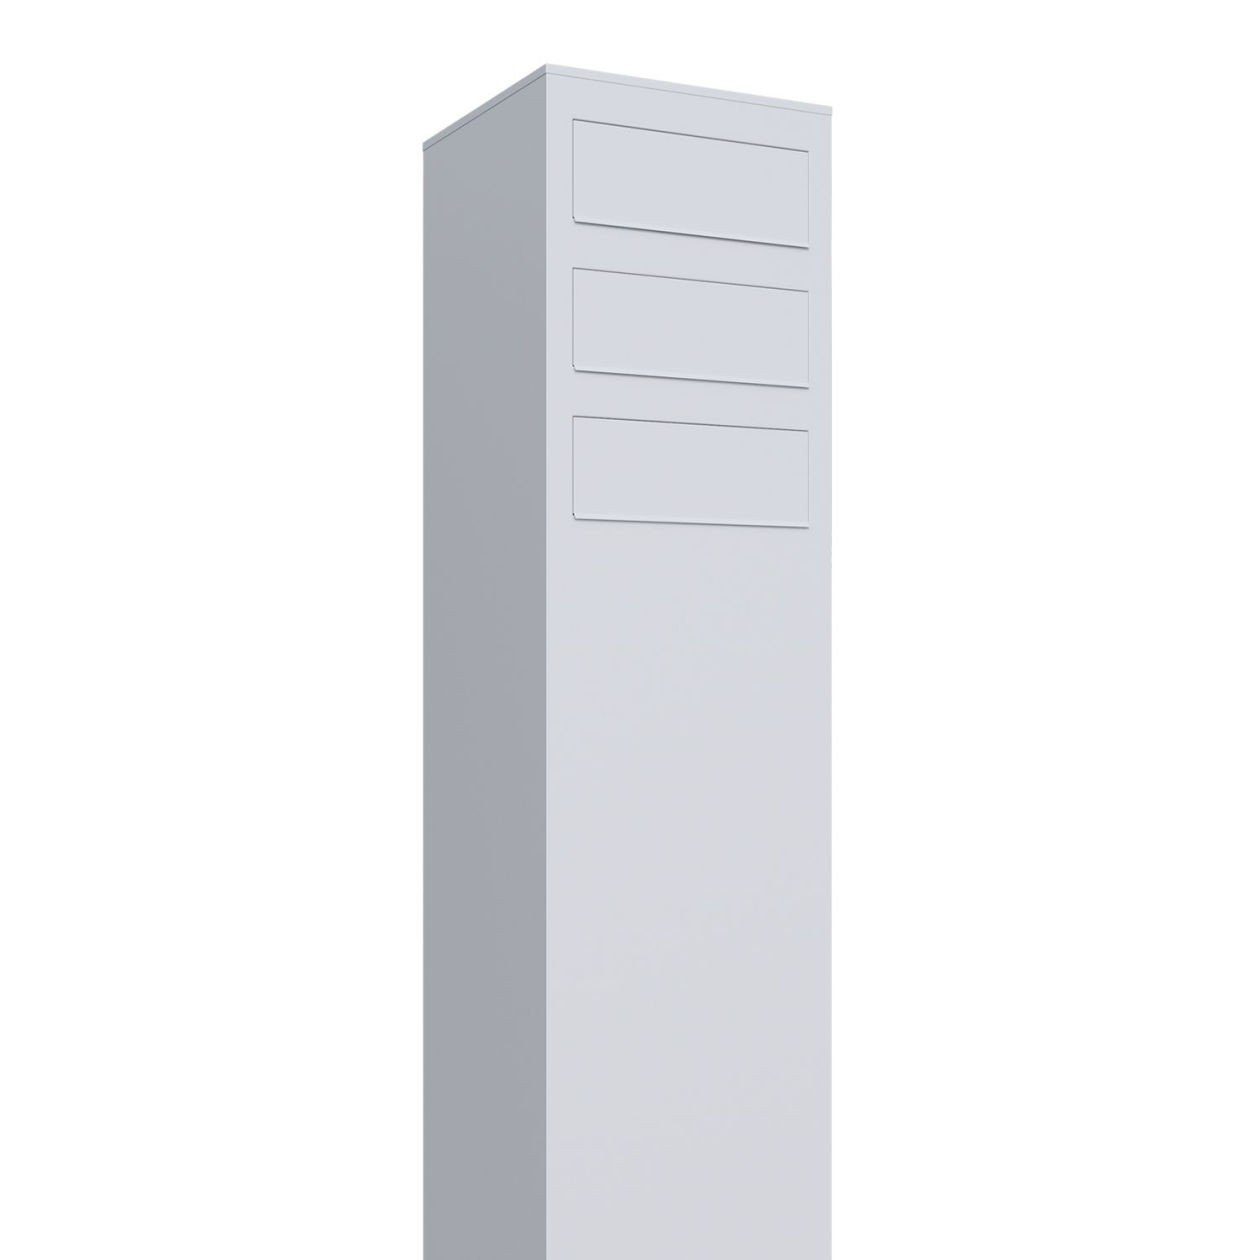 Bravios Briefkasten Monolith Weiß for Three Briefkastenanlage